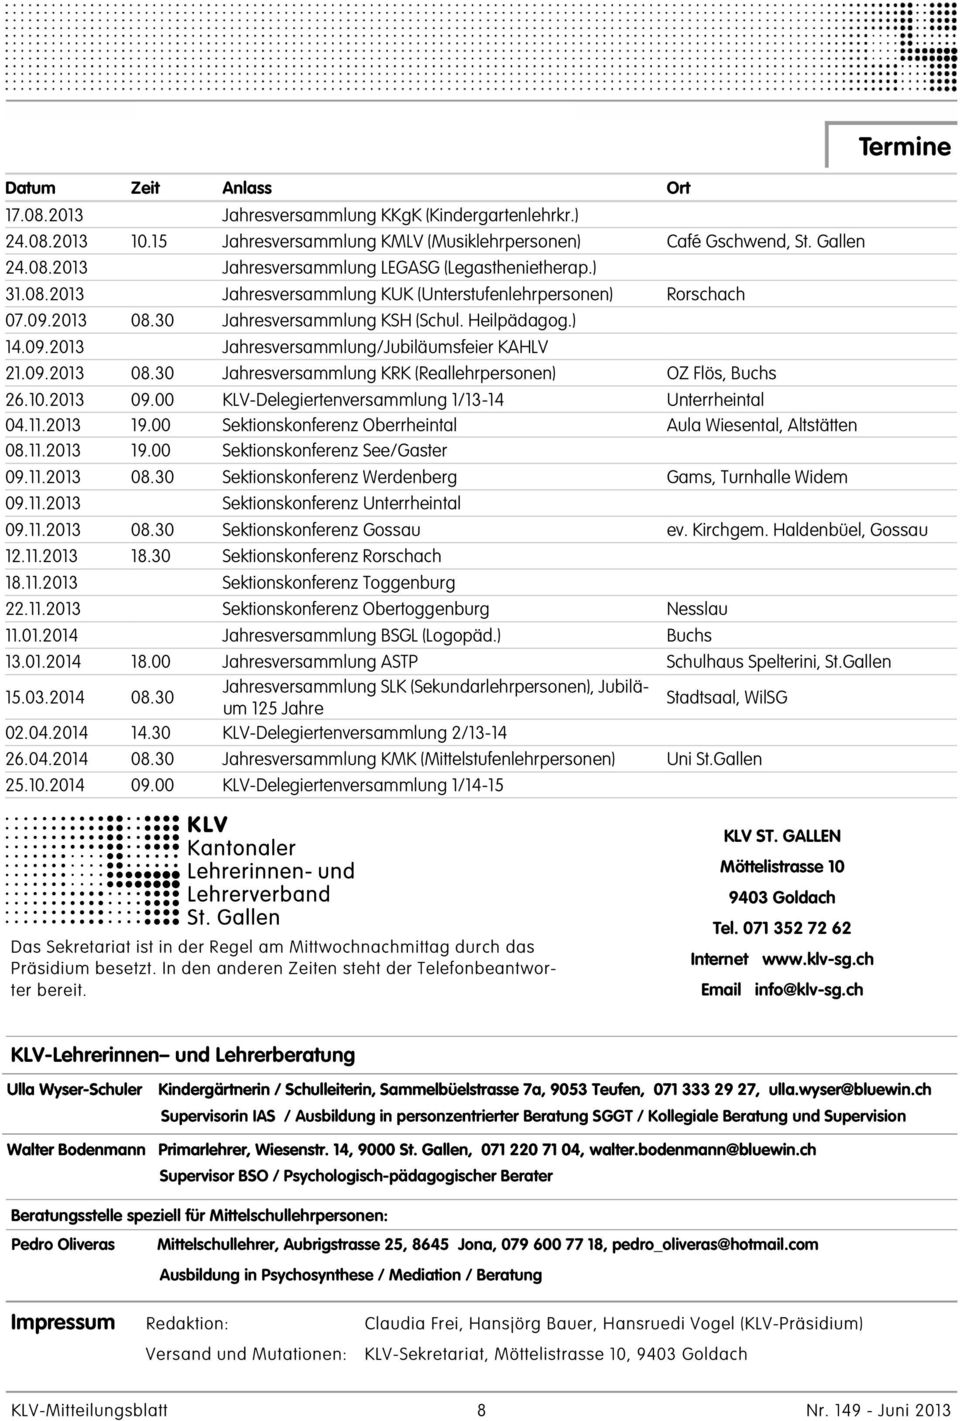 10.2013 09.00 KLV-Delegiertenversammlung 1/13-14 Unterrheintal 04.11.2013 19.00 Sektionskonferenz Oberrheintal Aula Wiesental, Altstätten 08.11.2013 19.00 Sektionskonferenz See/Gaster 09.11.2013 08.